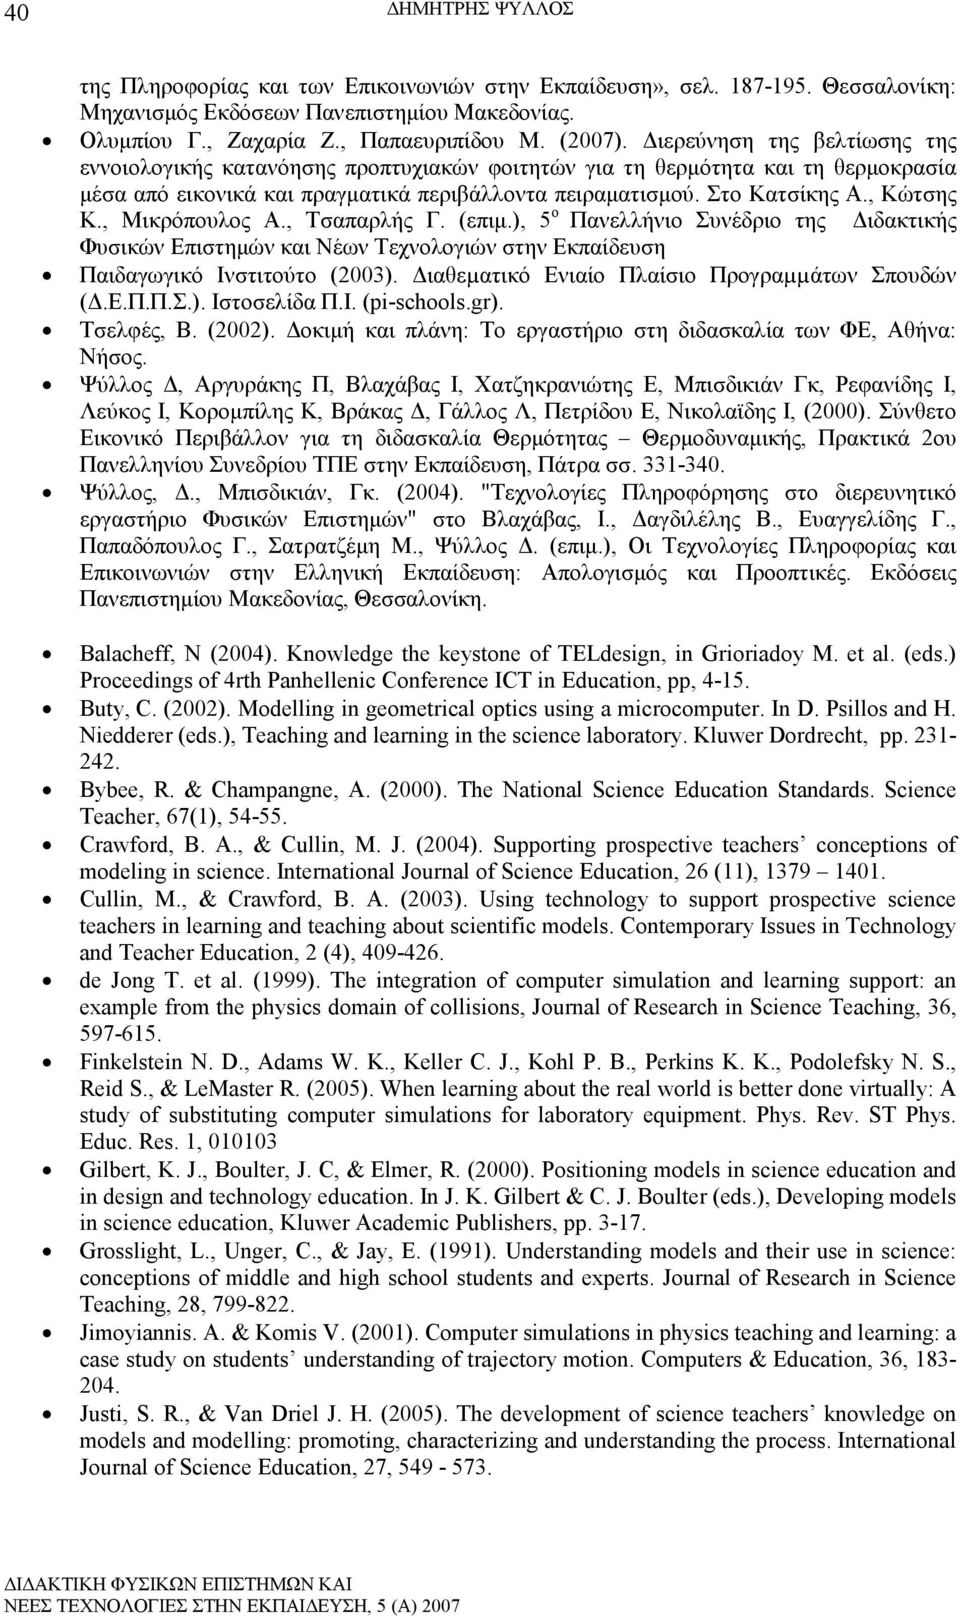 , Μικρόπουλος Α., Τσαπαρλής Γ. (επιµ.), 5 ο Πανελλήνιο Συνέδριο της ιδακτικής Φυσικών Επιστηµών και Νέων Τεχνολογιών στην Εκπαίδευση Παιδαγωγικό Ινστιτούτο (2003).